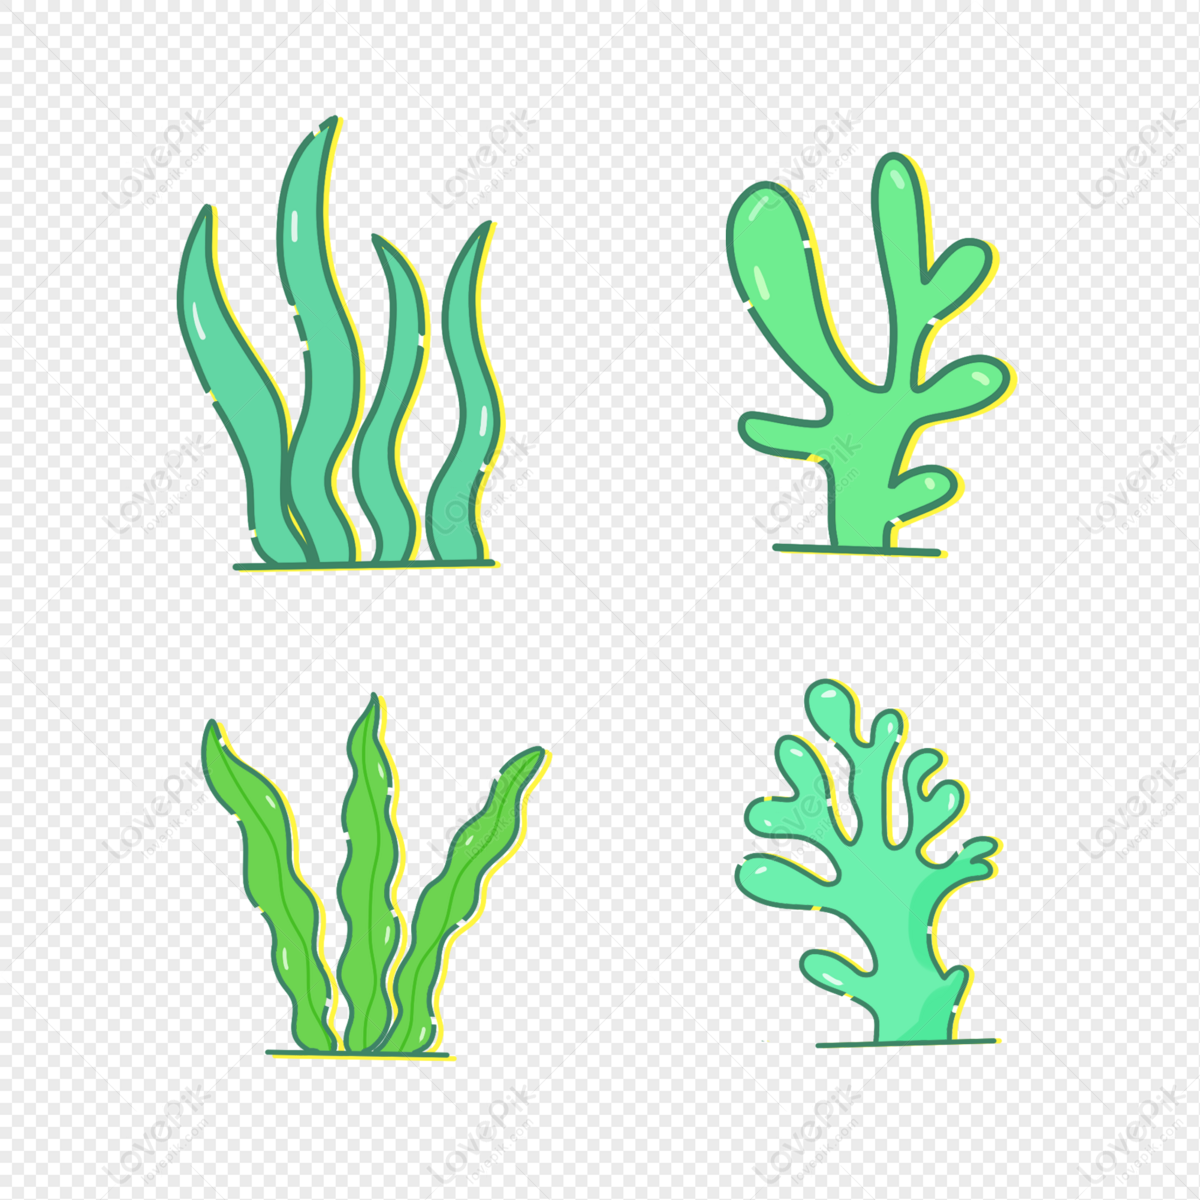 Rong biển (seaweed): Rong biển là một loại thực phẩm ngon và bổ dưỡng, cũng như là một loại vật liệu tuyệt vời cho các sản phẩm nghệ thuật. Với hình ảnh này, bạn sẽ được chiêm ngưỡng những sắc màu và hình dạng tuyệt đẹp của các loại rong biển khác nhau.